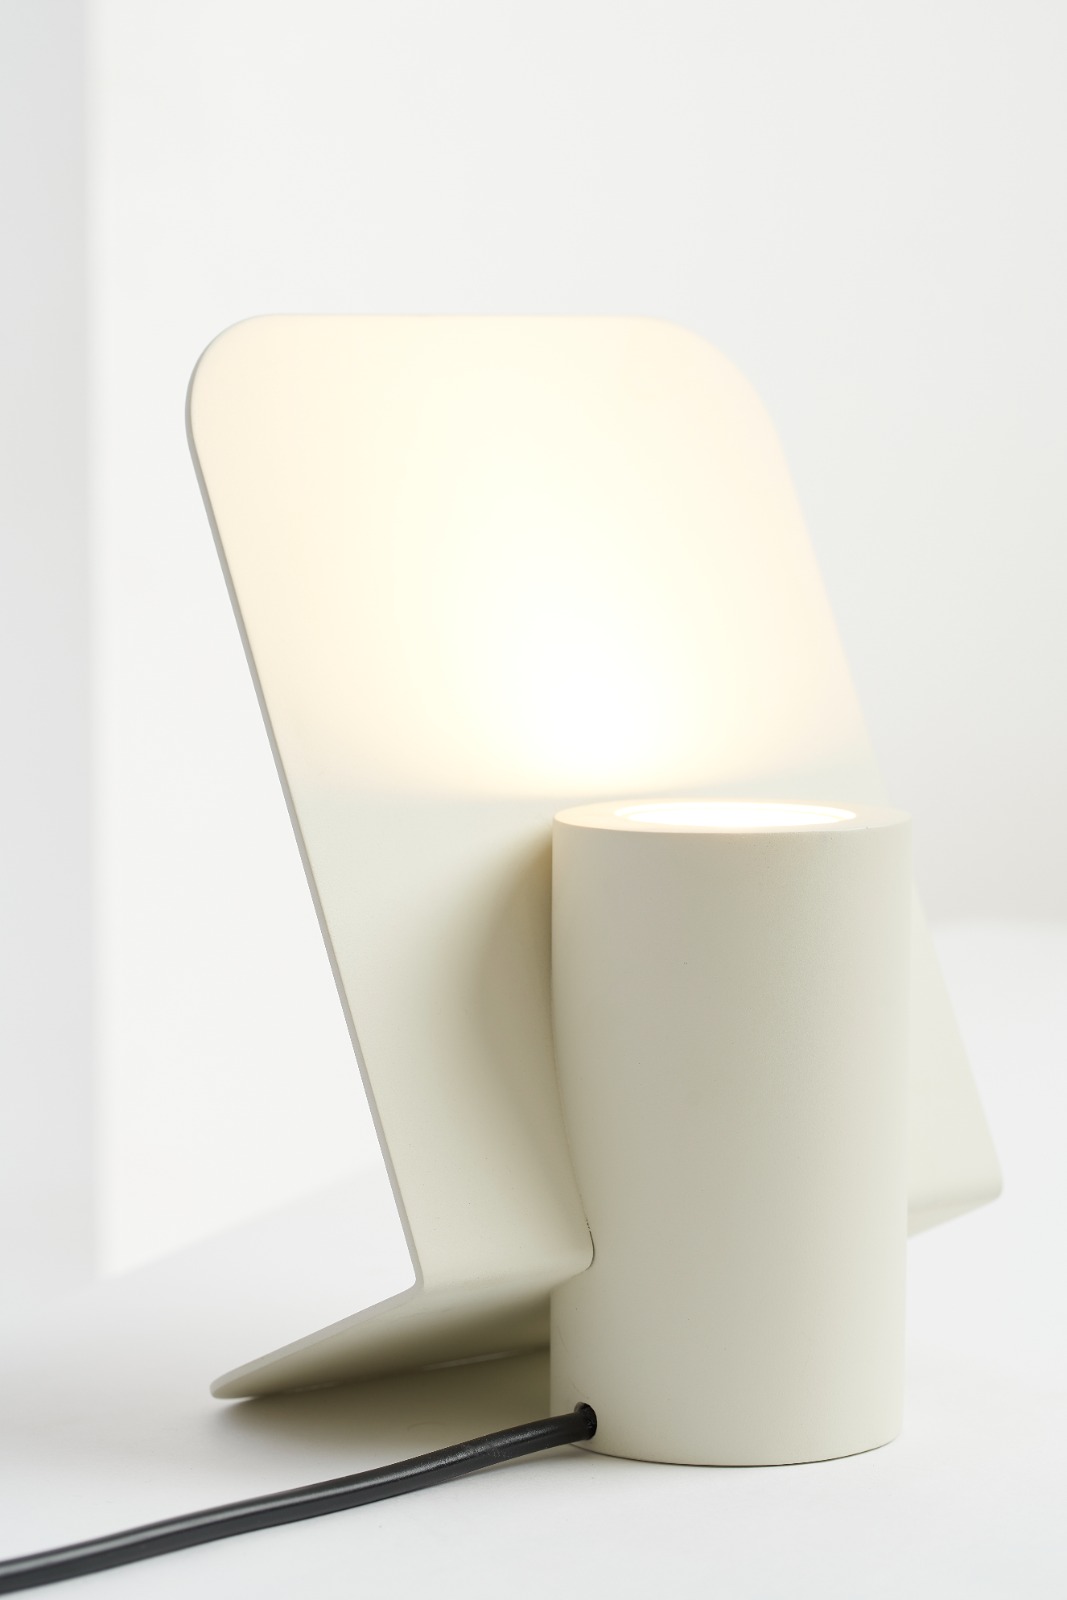 Vela table lamp designed for Iludi